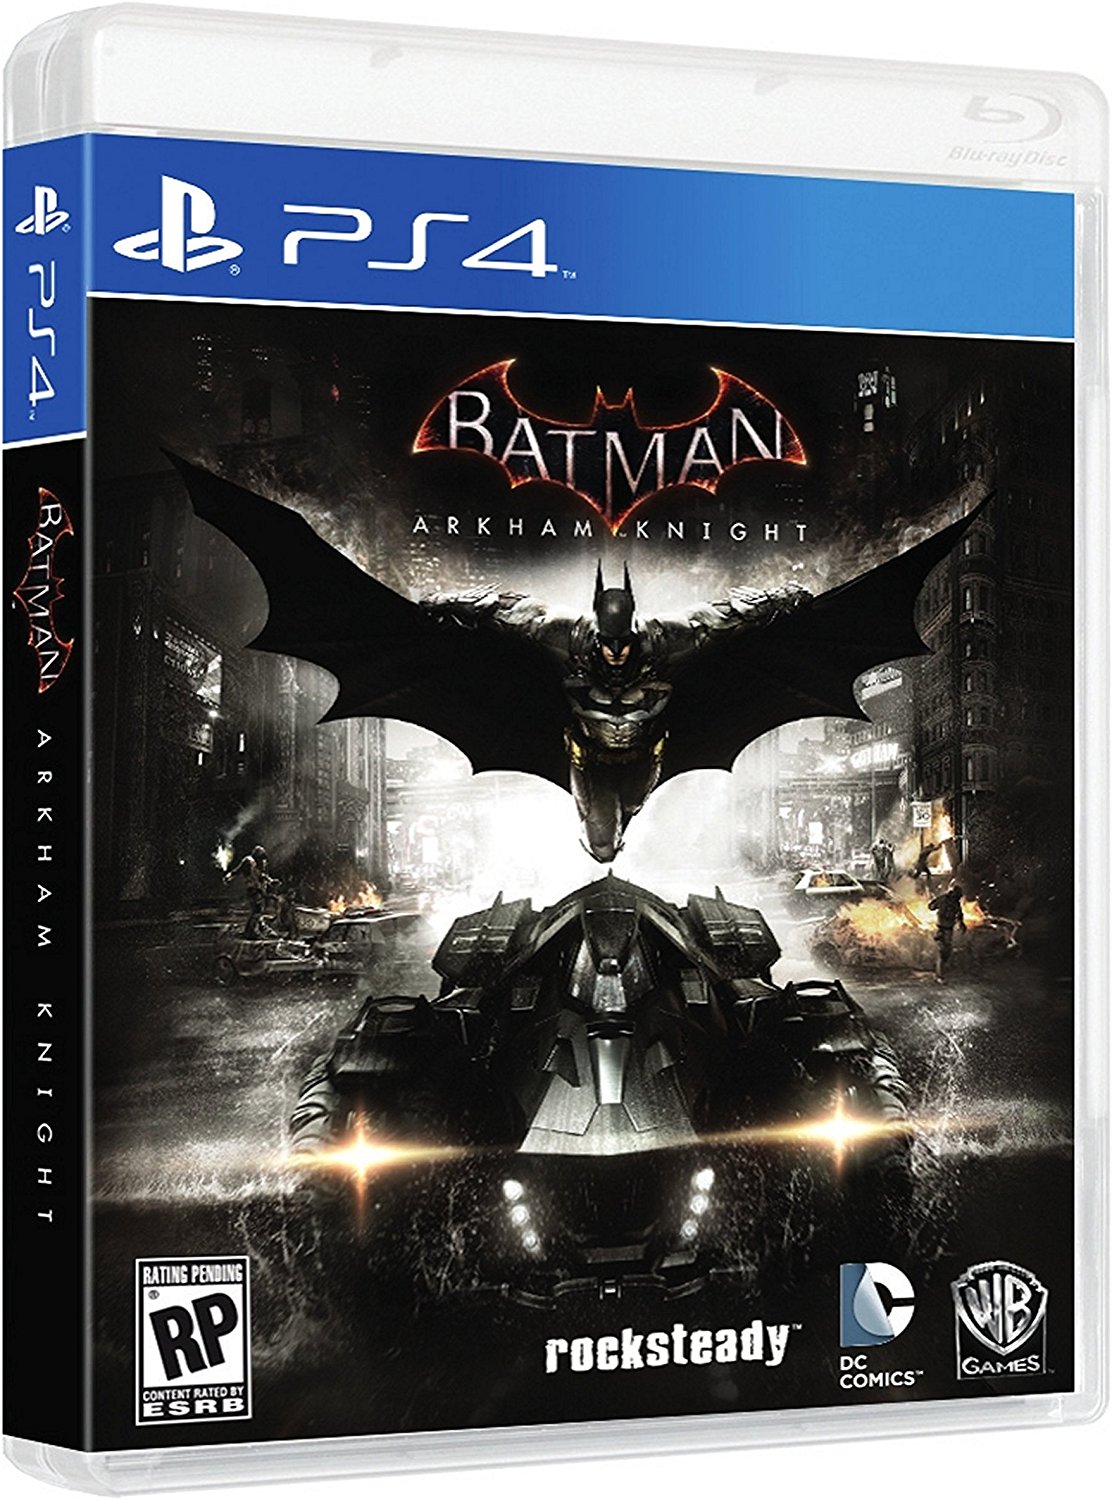 download free batman ps4